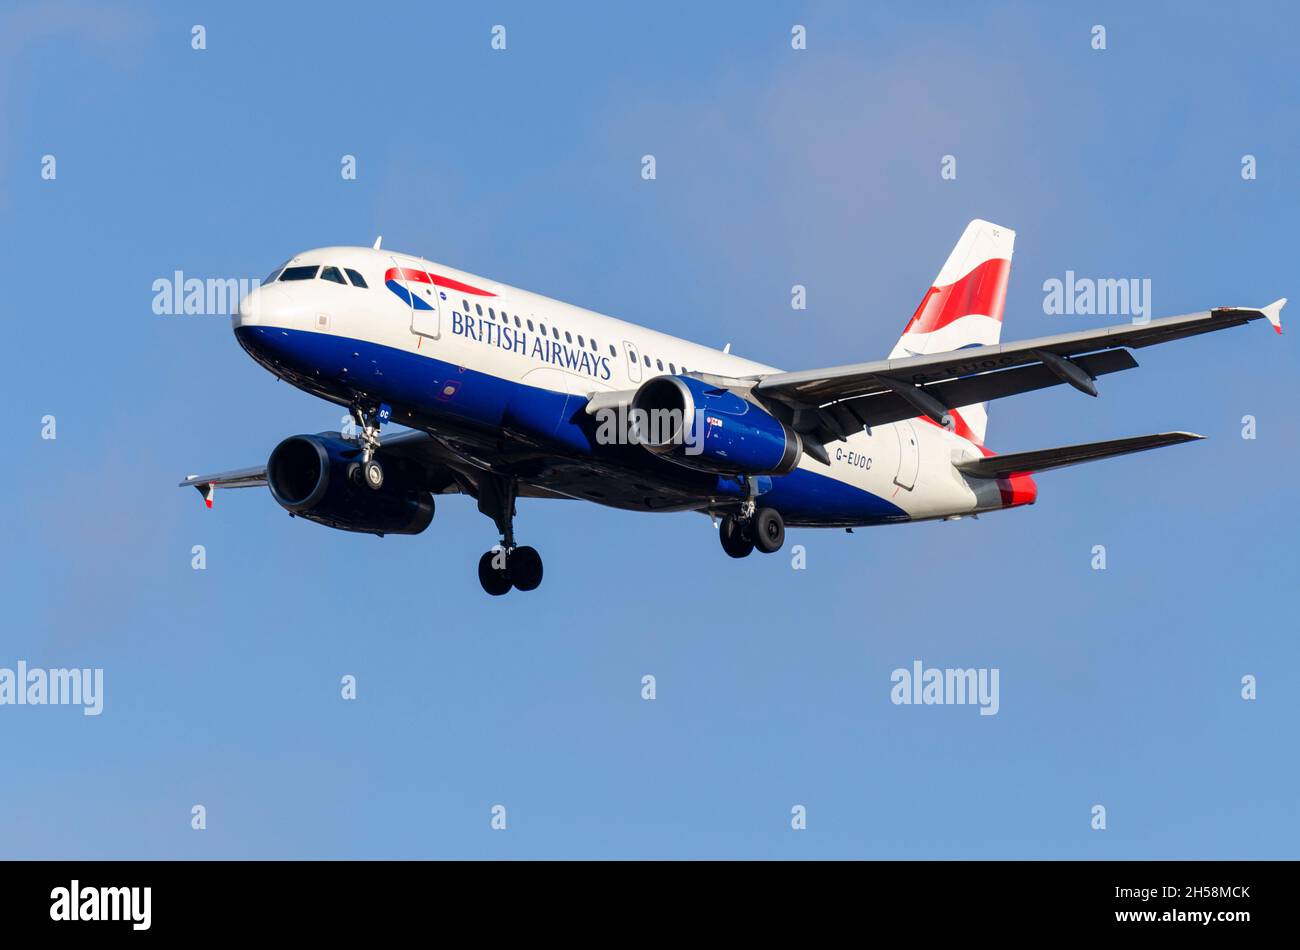 British Airways Airbus A319 aereo aereo aereo aereo aereo aereo aereo aereo G-EUOC su come arrivare a terra all'aeroporto di Londra Heathrow, Regno Unito. Piccolo aeroplano usato per corto raggio. Vecchio jet Foto Stock